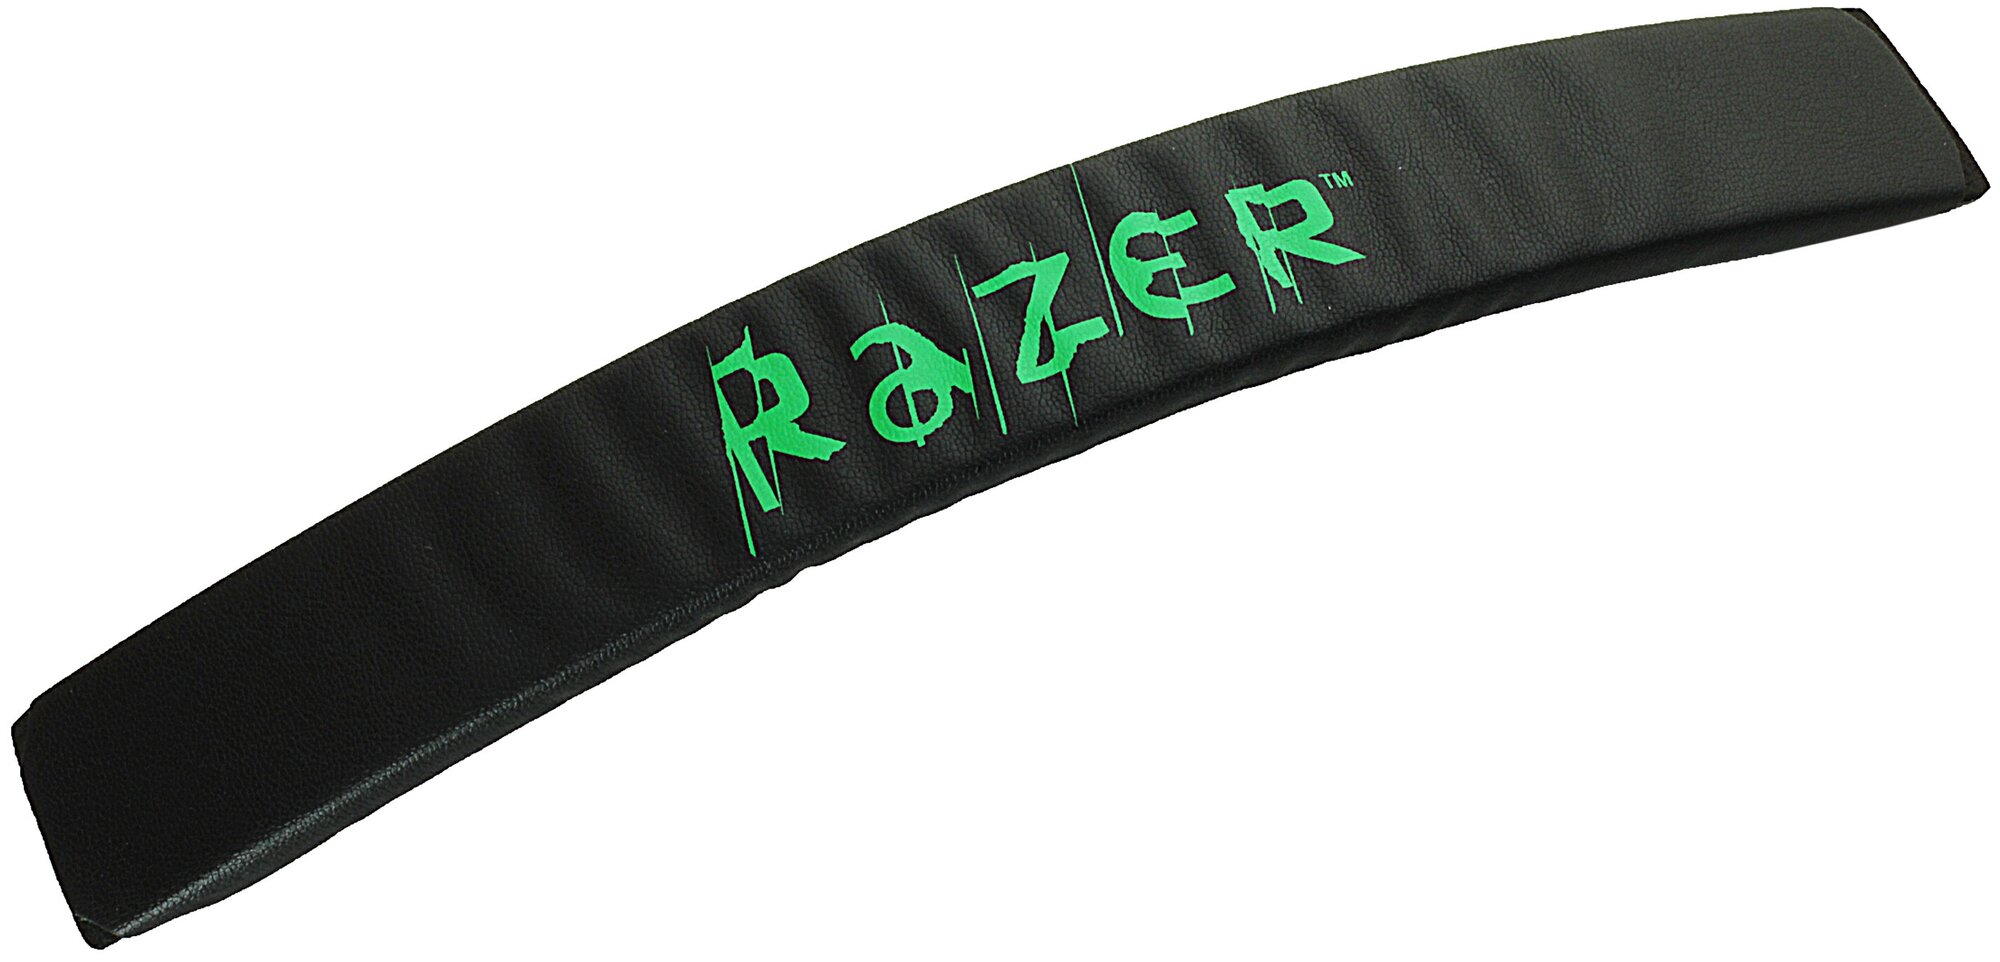 Обшивка оголовья для наушников Razer Kraken PRO / Kraken 7.1 / Electra черная с зелеными буквами